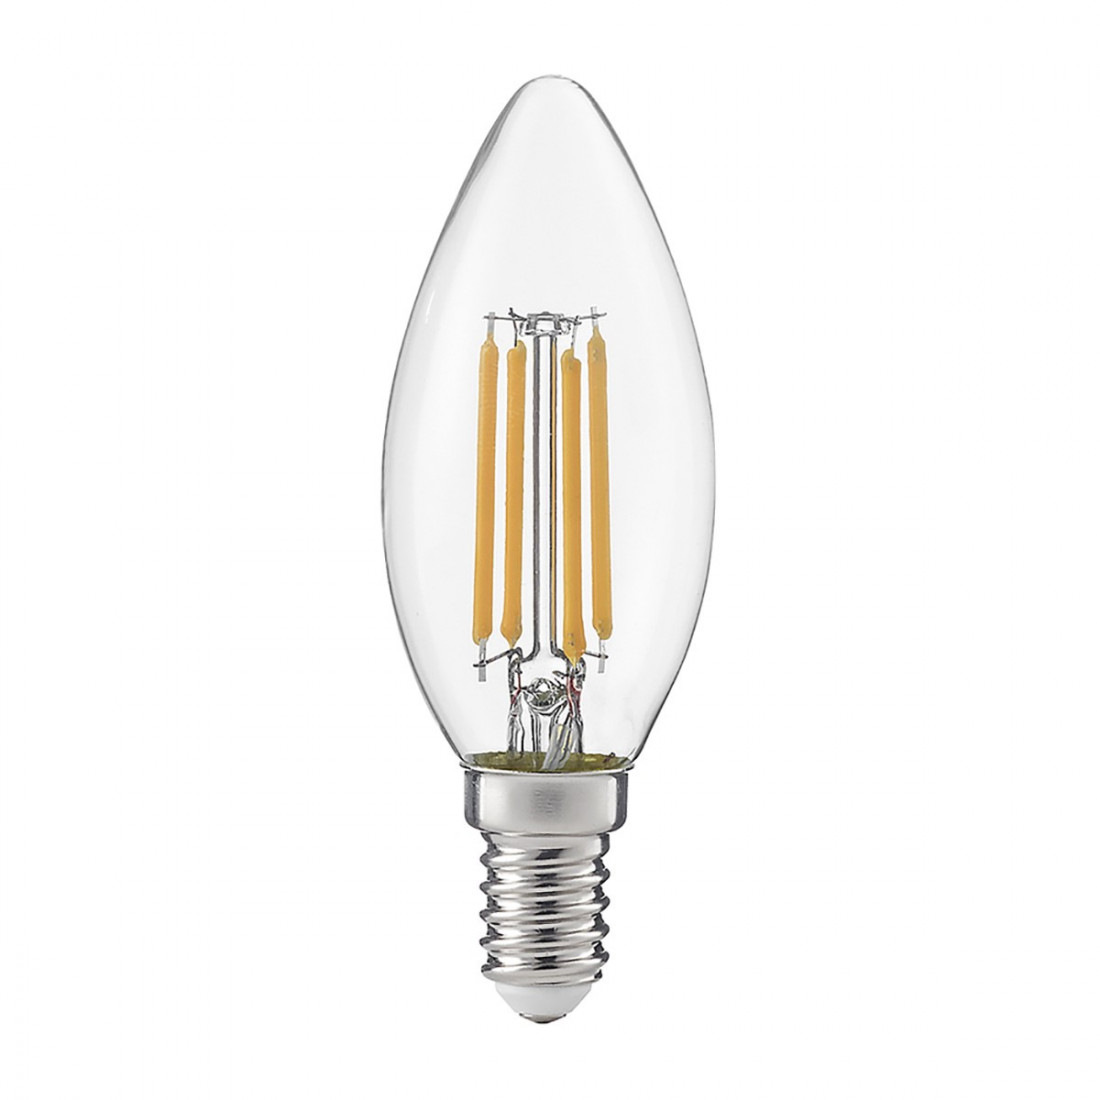 Acquista Lampada LED 6W E14 luce selezionabile calda, naturale o